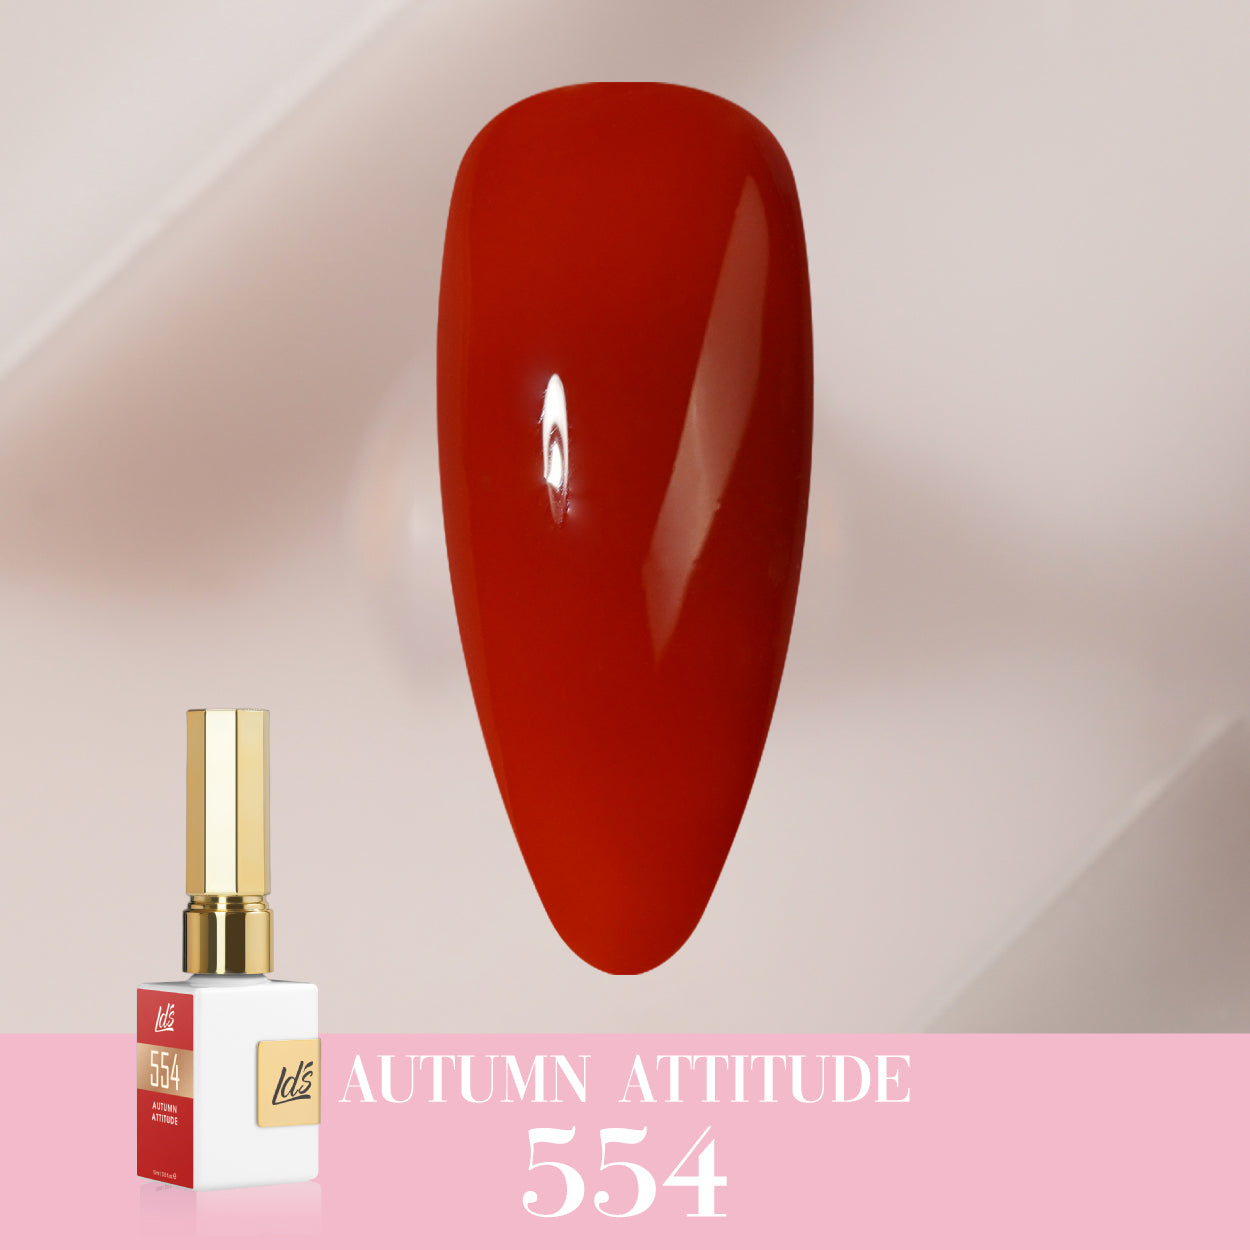 LDS Color Craze Collection - 554 Autumn Attitude - Gel Polish 0.5oz